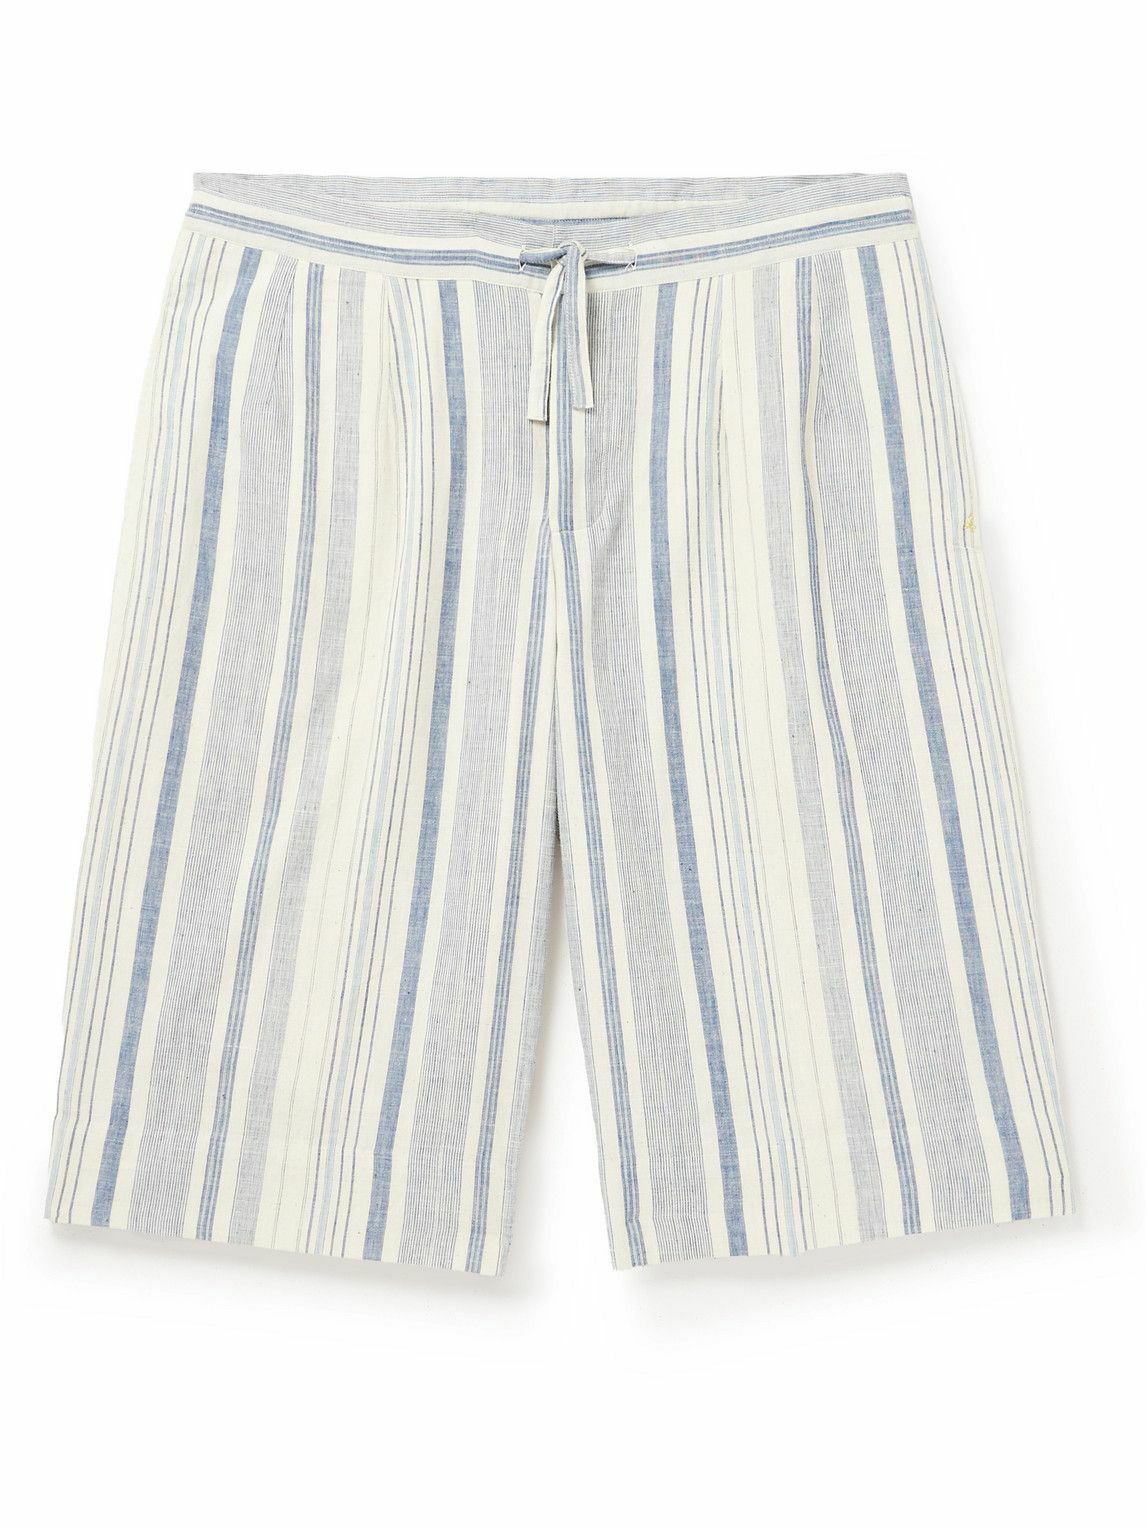 11.11/eleven eleven - Striped Organic Cotton Shorts - Blue 11.11/eleven ...